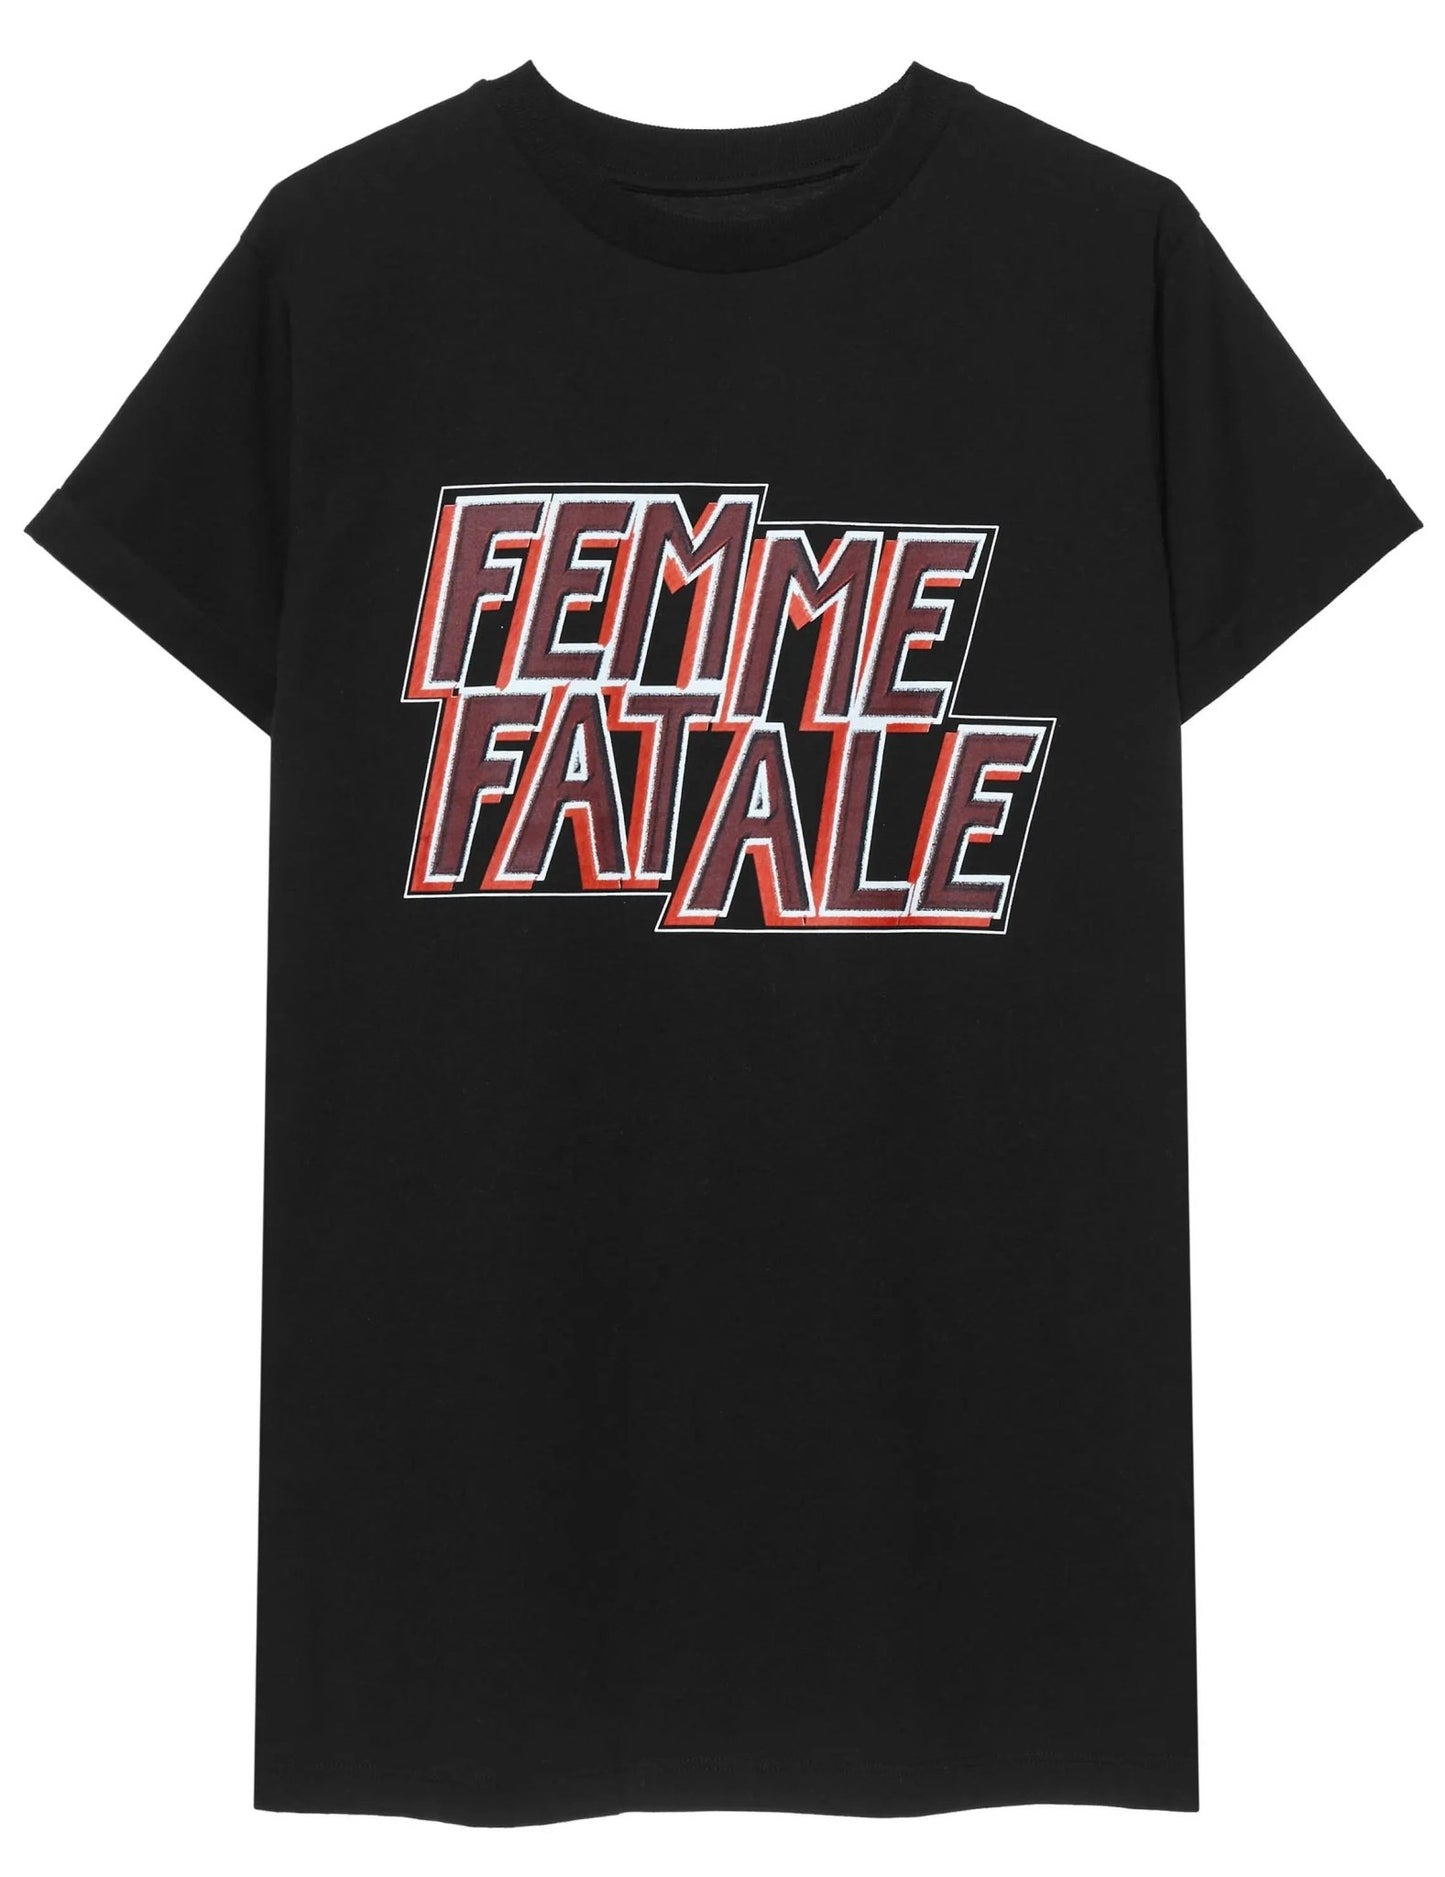 Yeezlouise Shirt Femme Fatale Yeezlouise